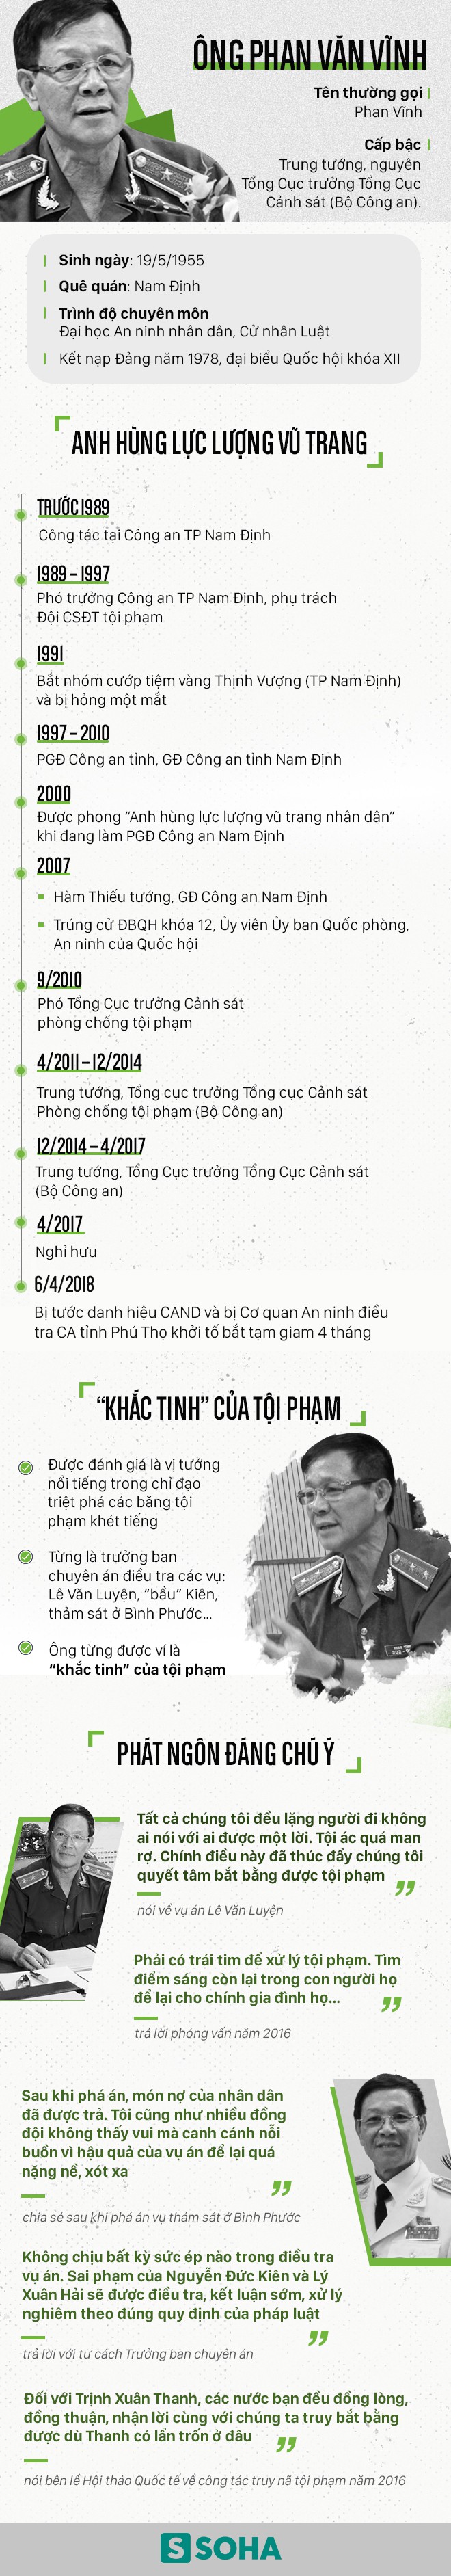 Sự nghiệp của cựu Tổng Cục trưởng Tổng Cục Cảnh sát Phan Văn Vĩnh